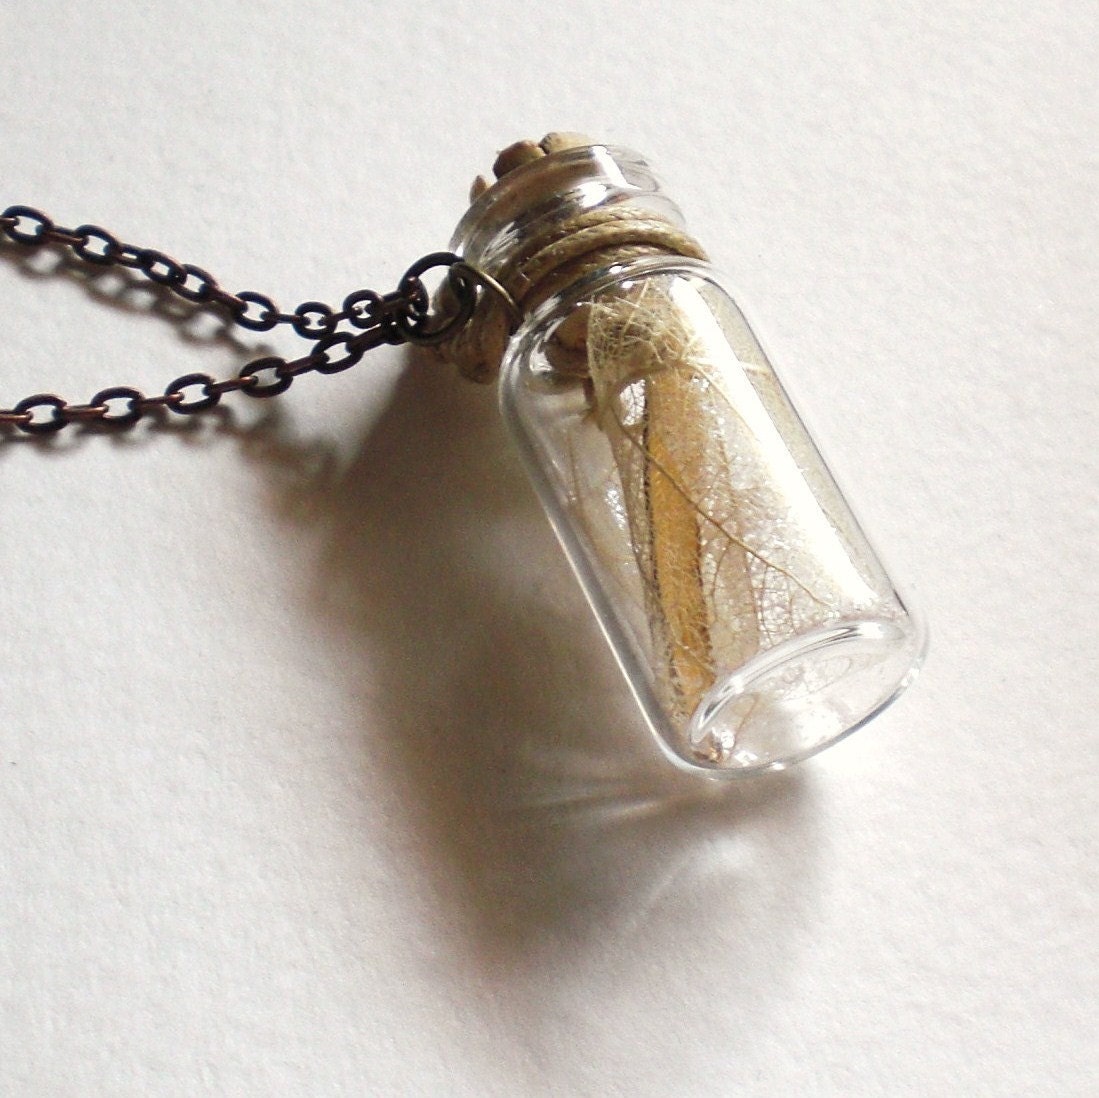 Fairy Wings in a Bottle Necklace - grendelboots